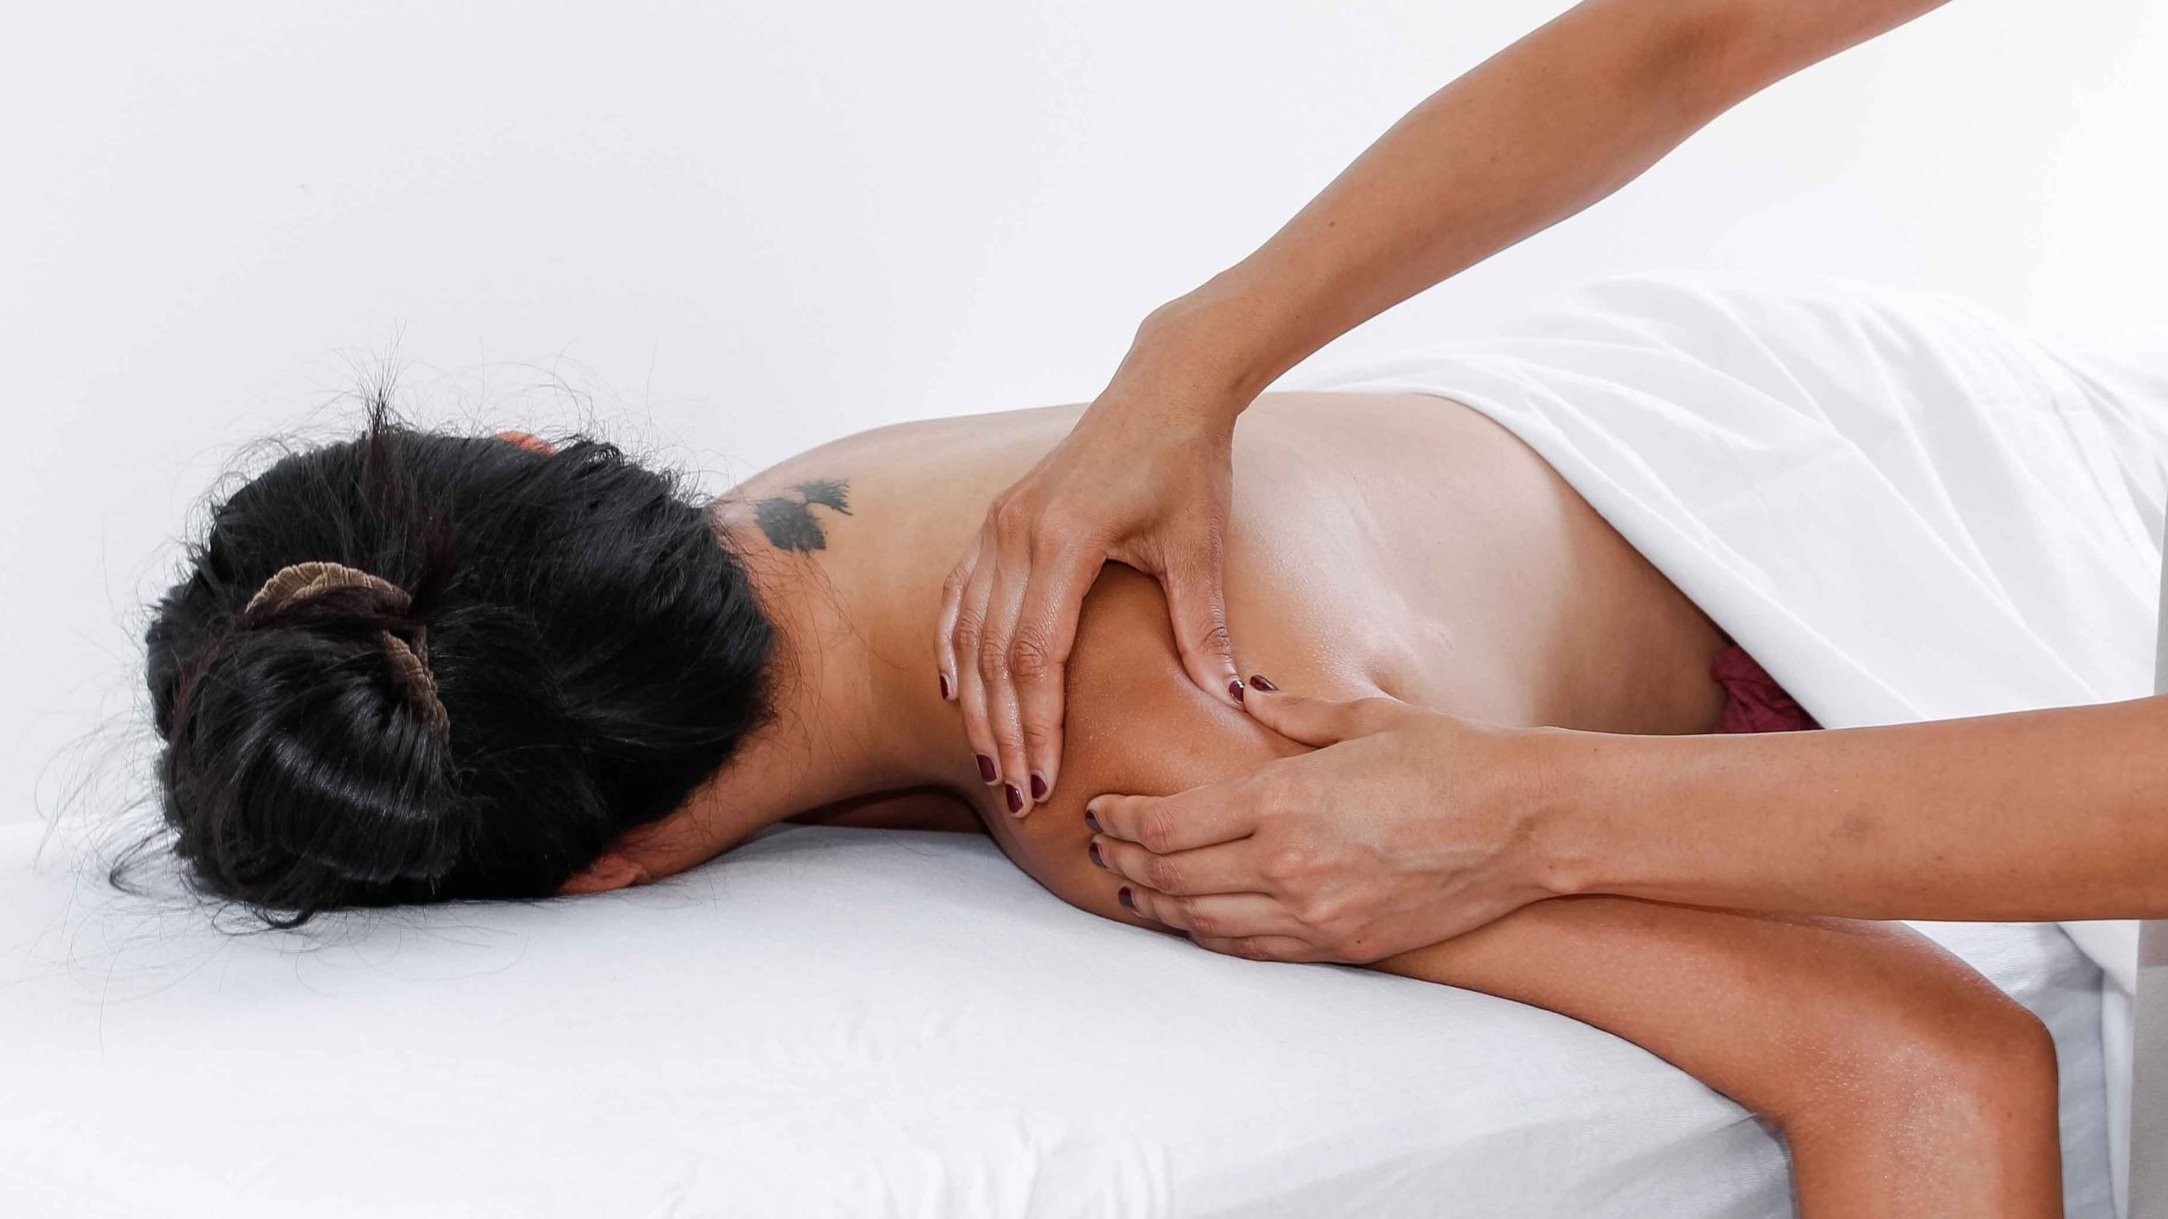 Back Neck Shoulder Massage - Zen SPA